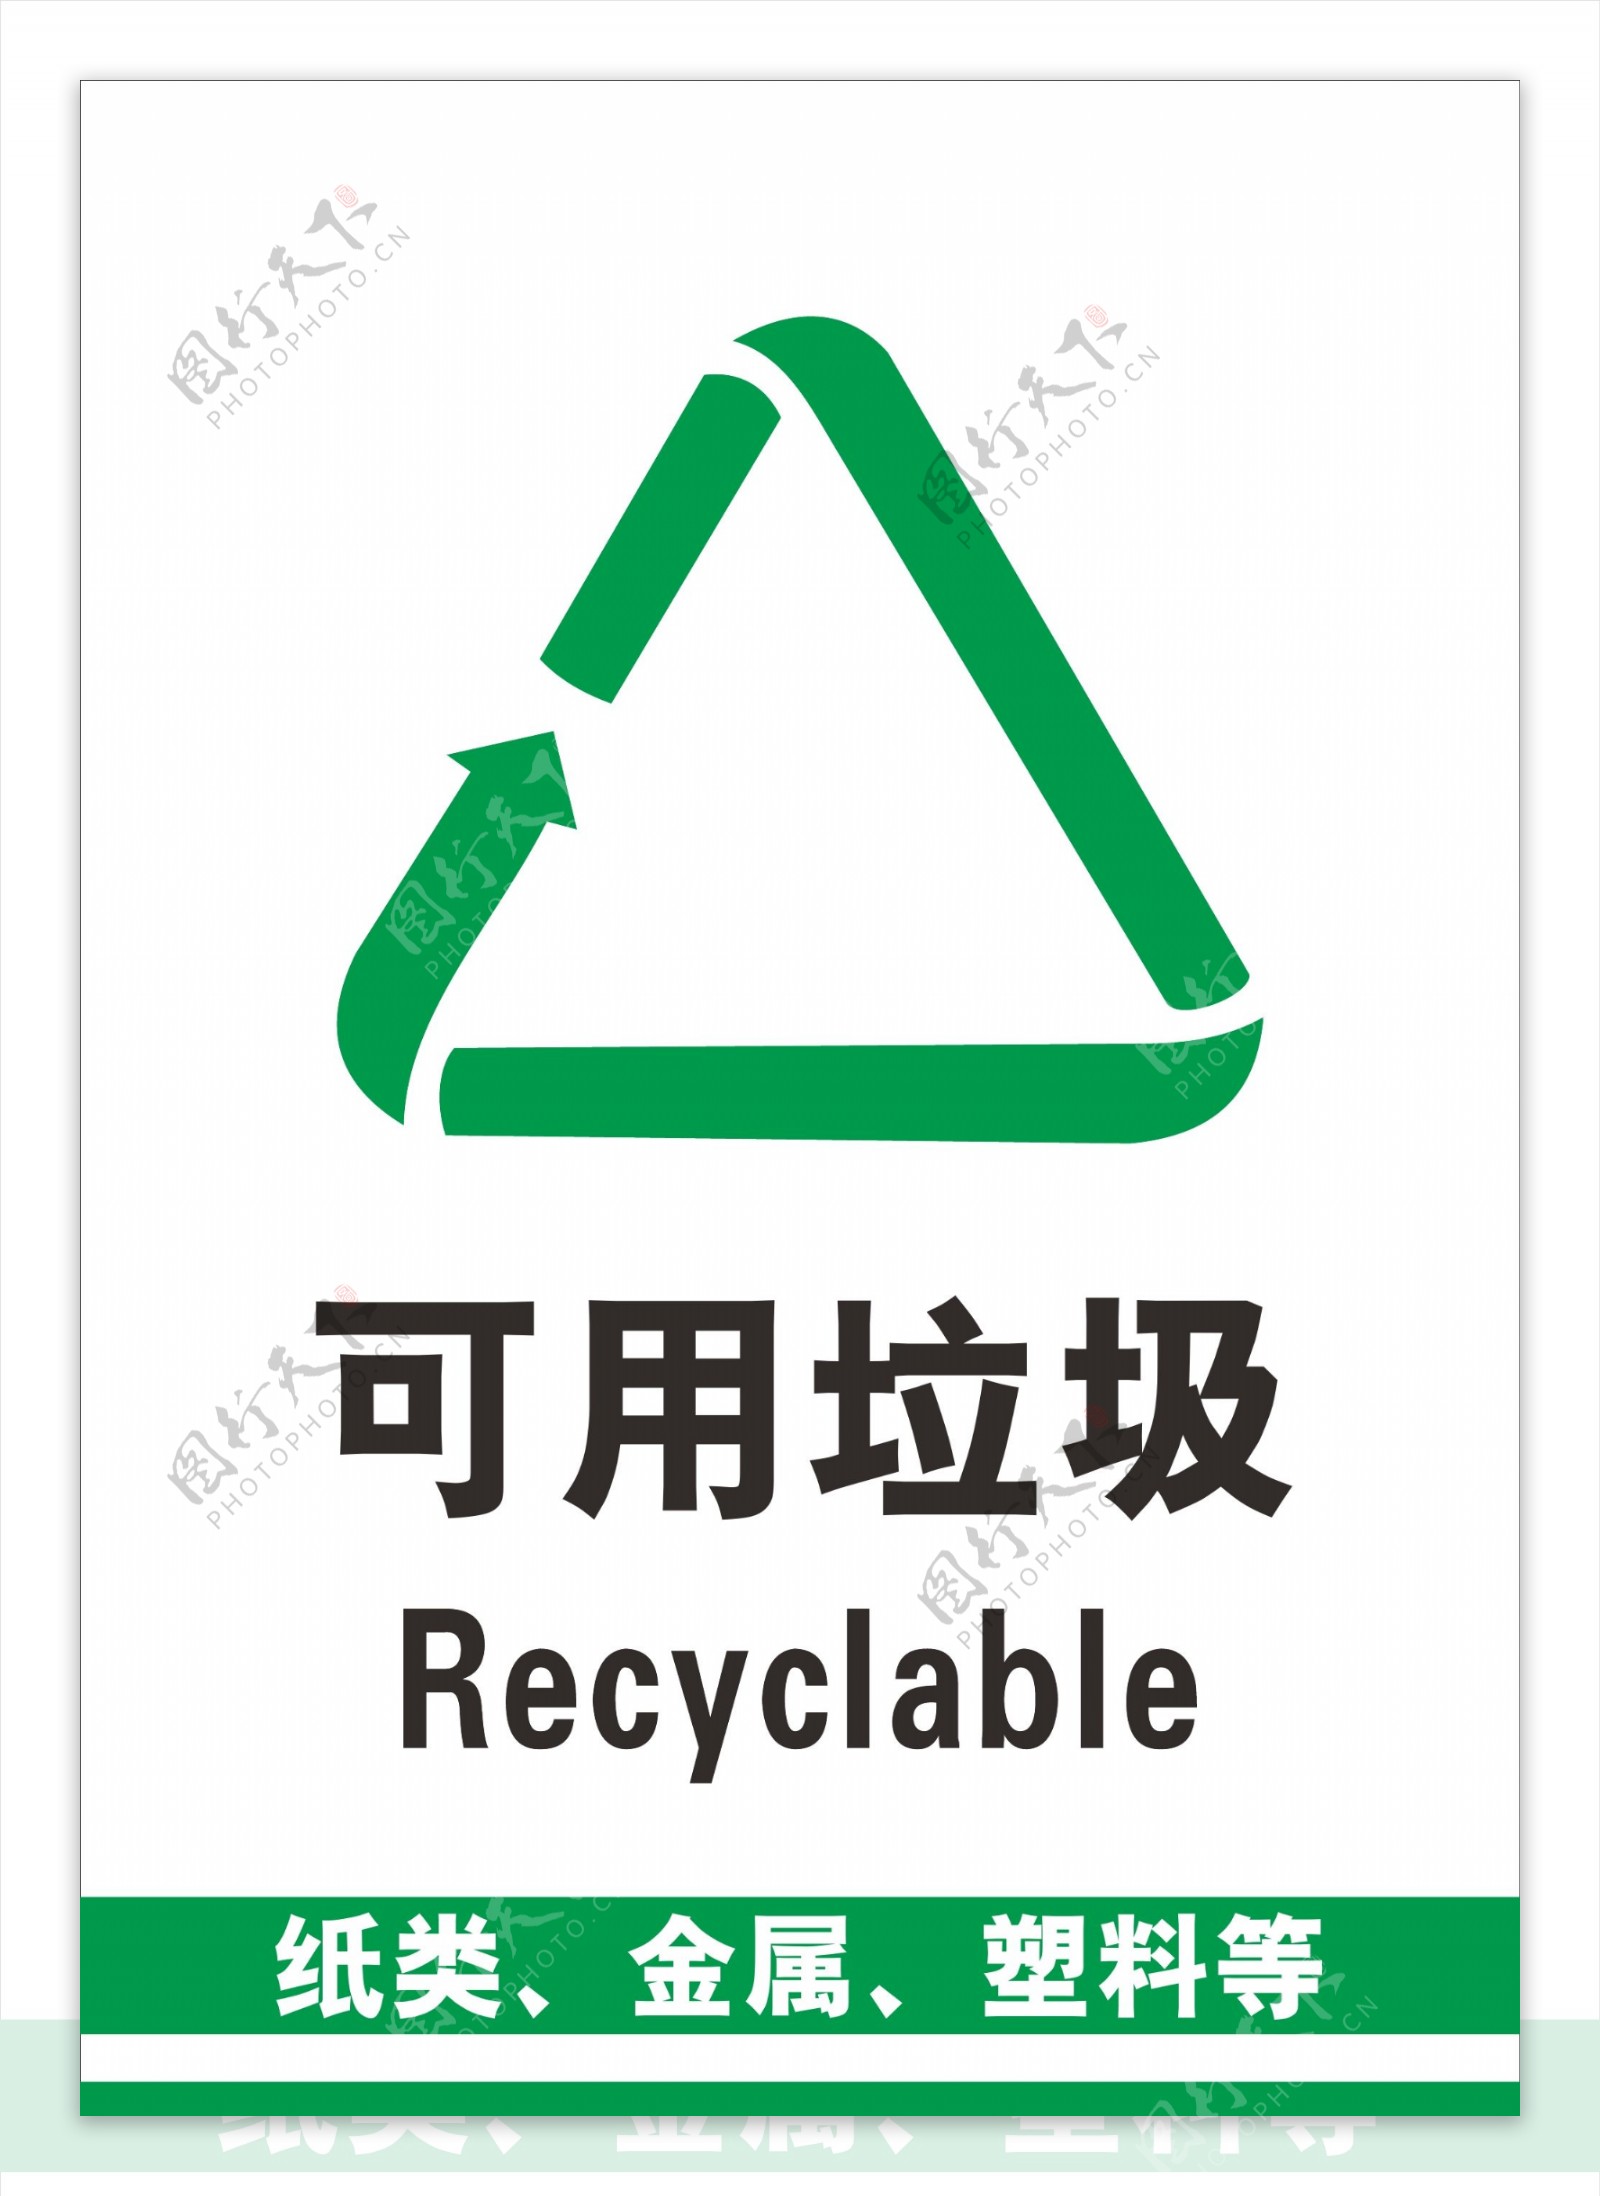 垃圾回收标识可回收垃圾图片